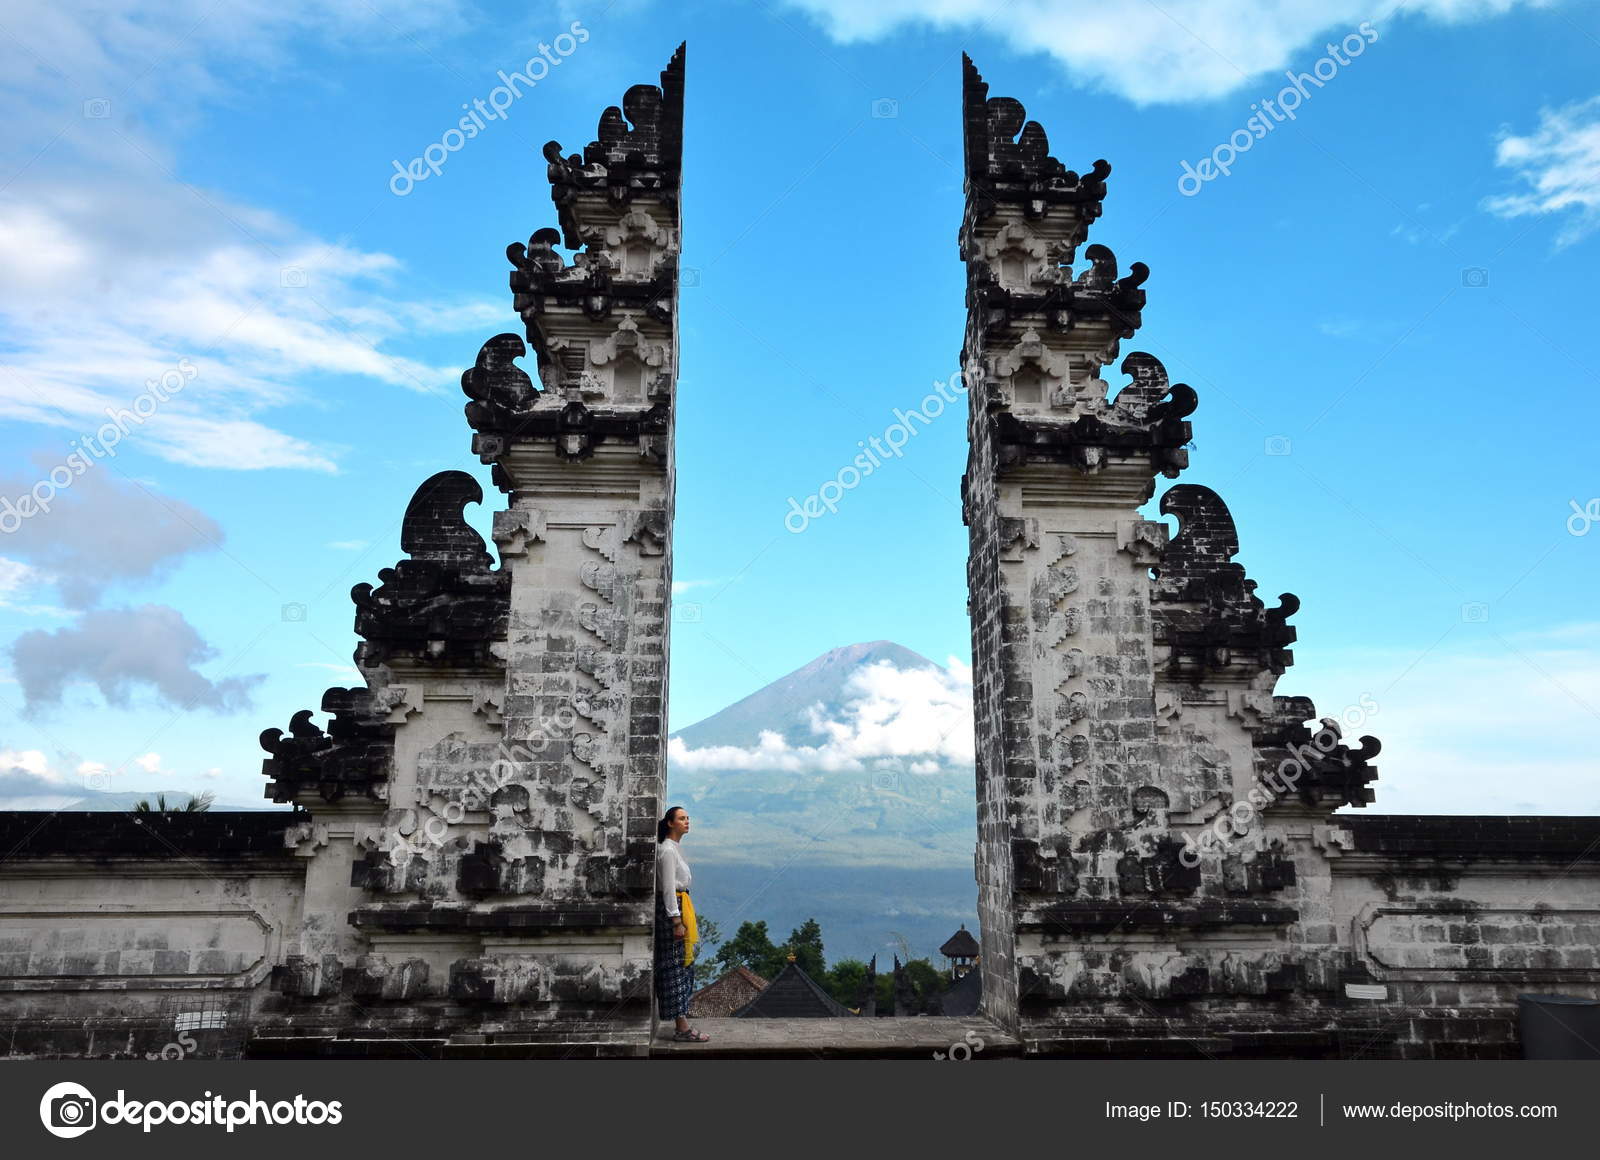  Pura  Luhur  Lempuyang  temple  Bali Indonesia  Stock Photo 